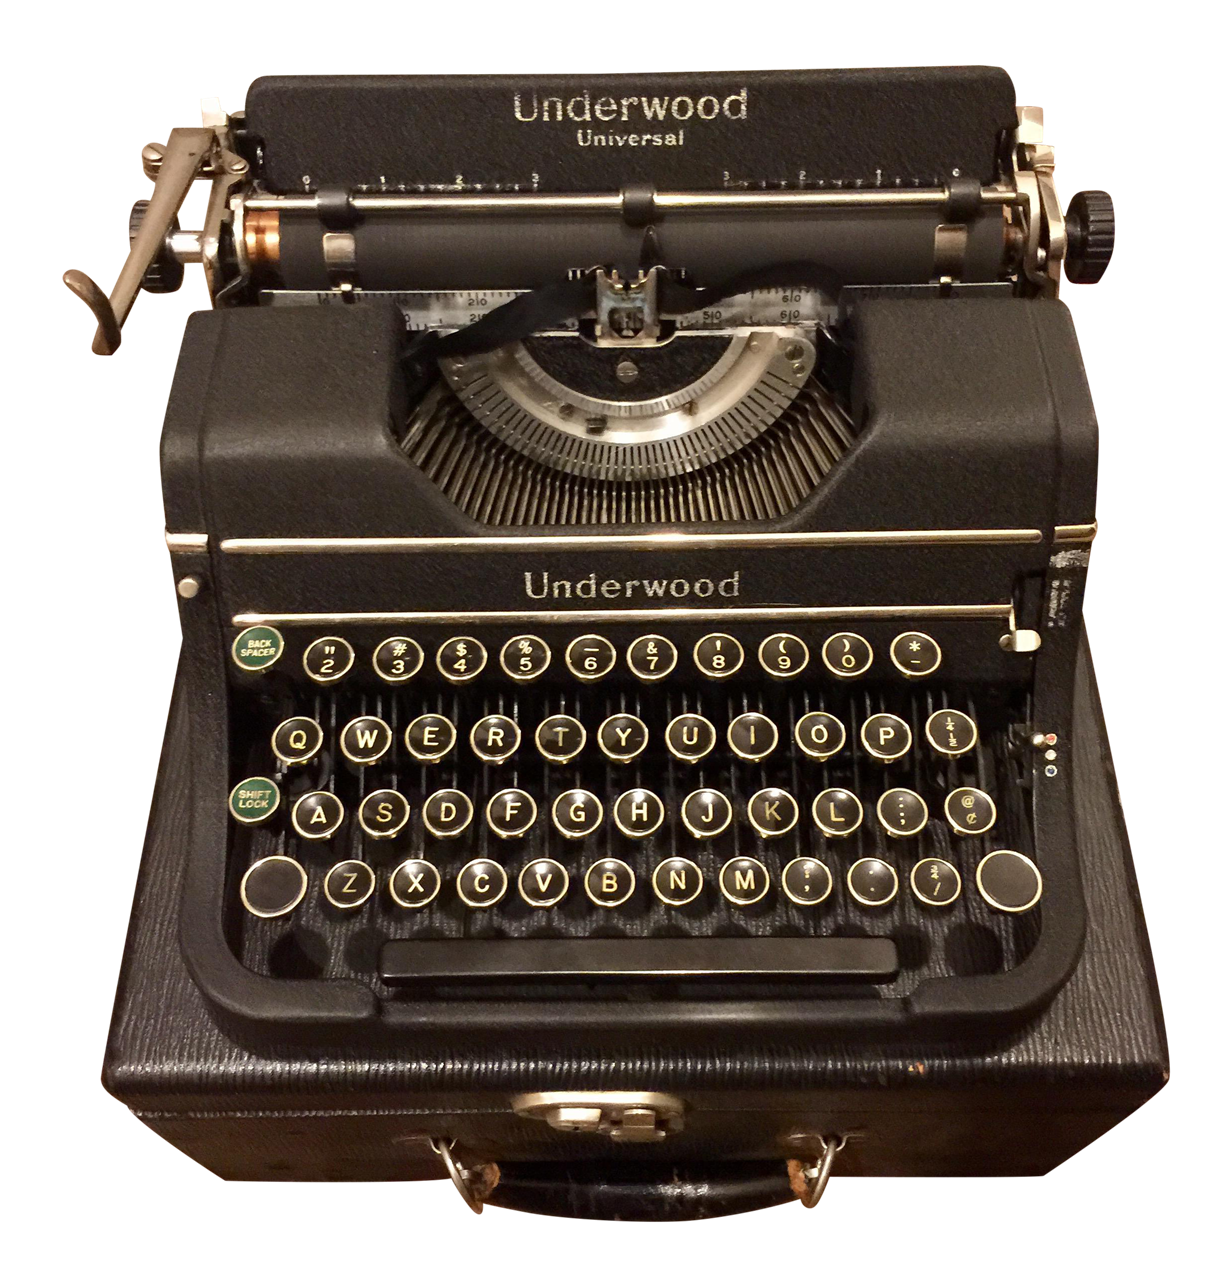 Antique Typewriter Download PNG Image